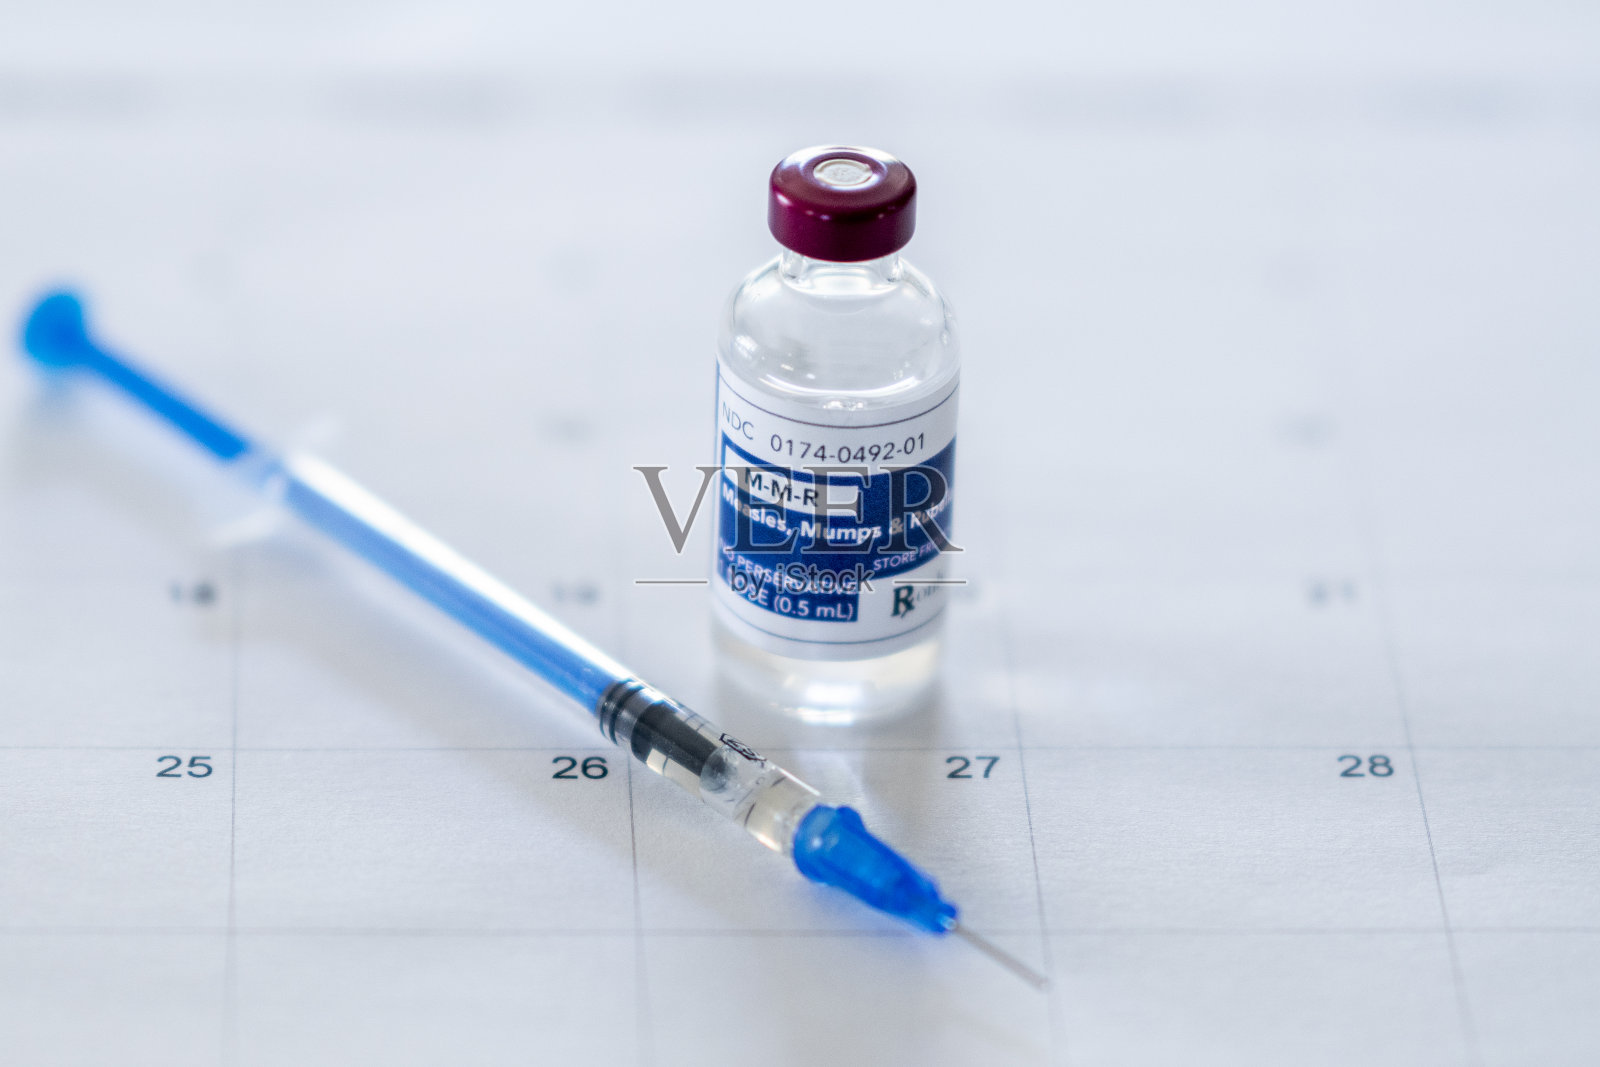 麻疹、腮腺炎、风疹(MMR)疫苗瓶照片摄影图片